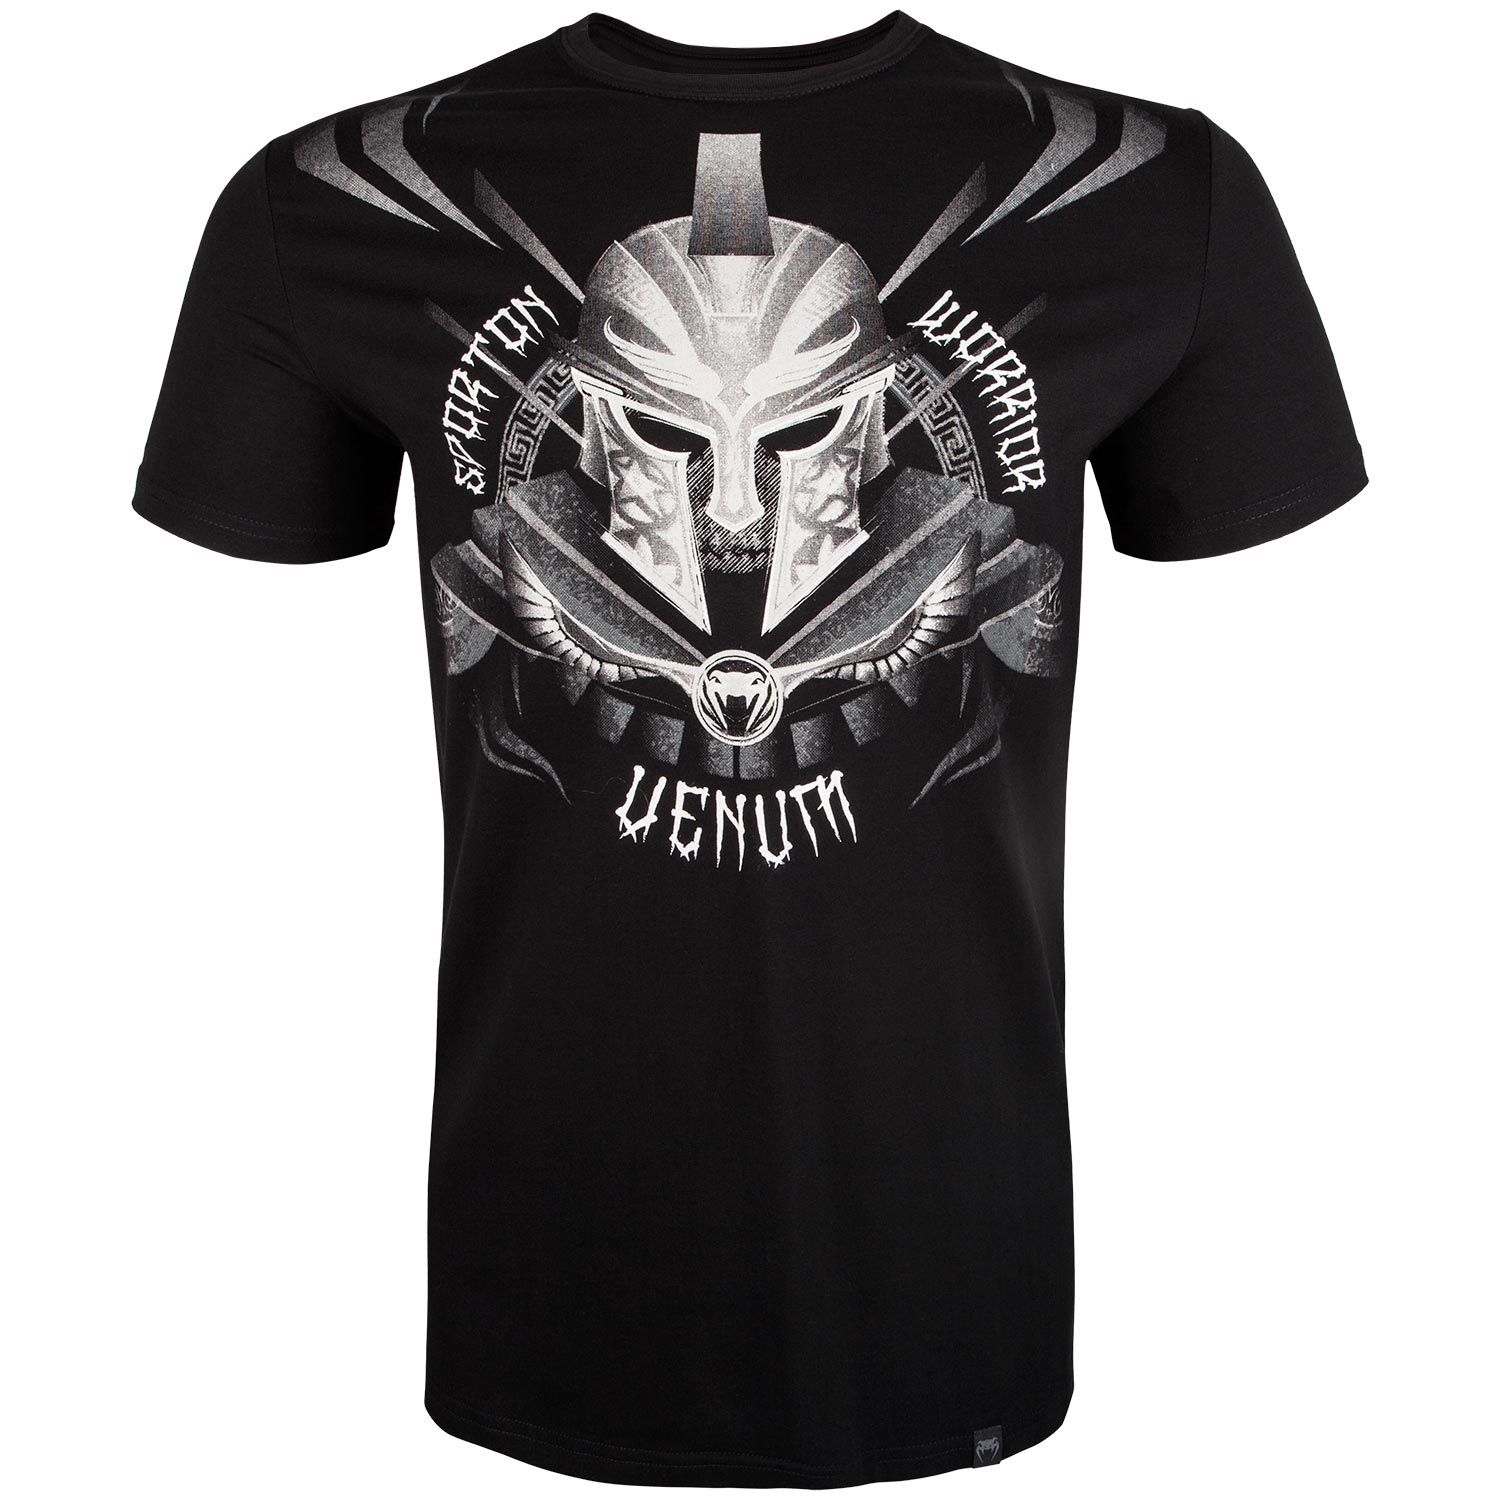 Camiseta Venum Gladiator 3.0 - Negro/Blanco